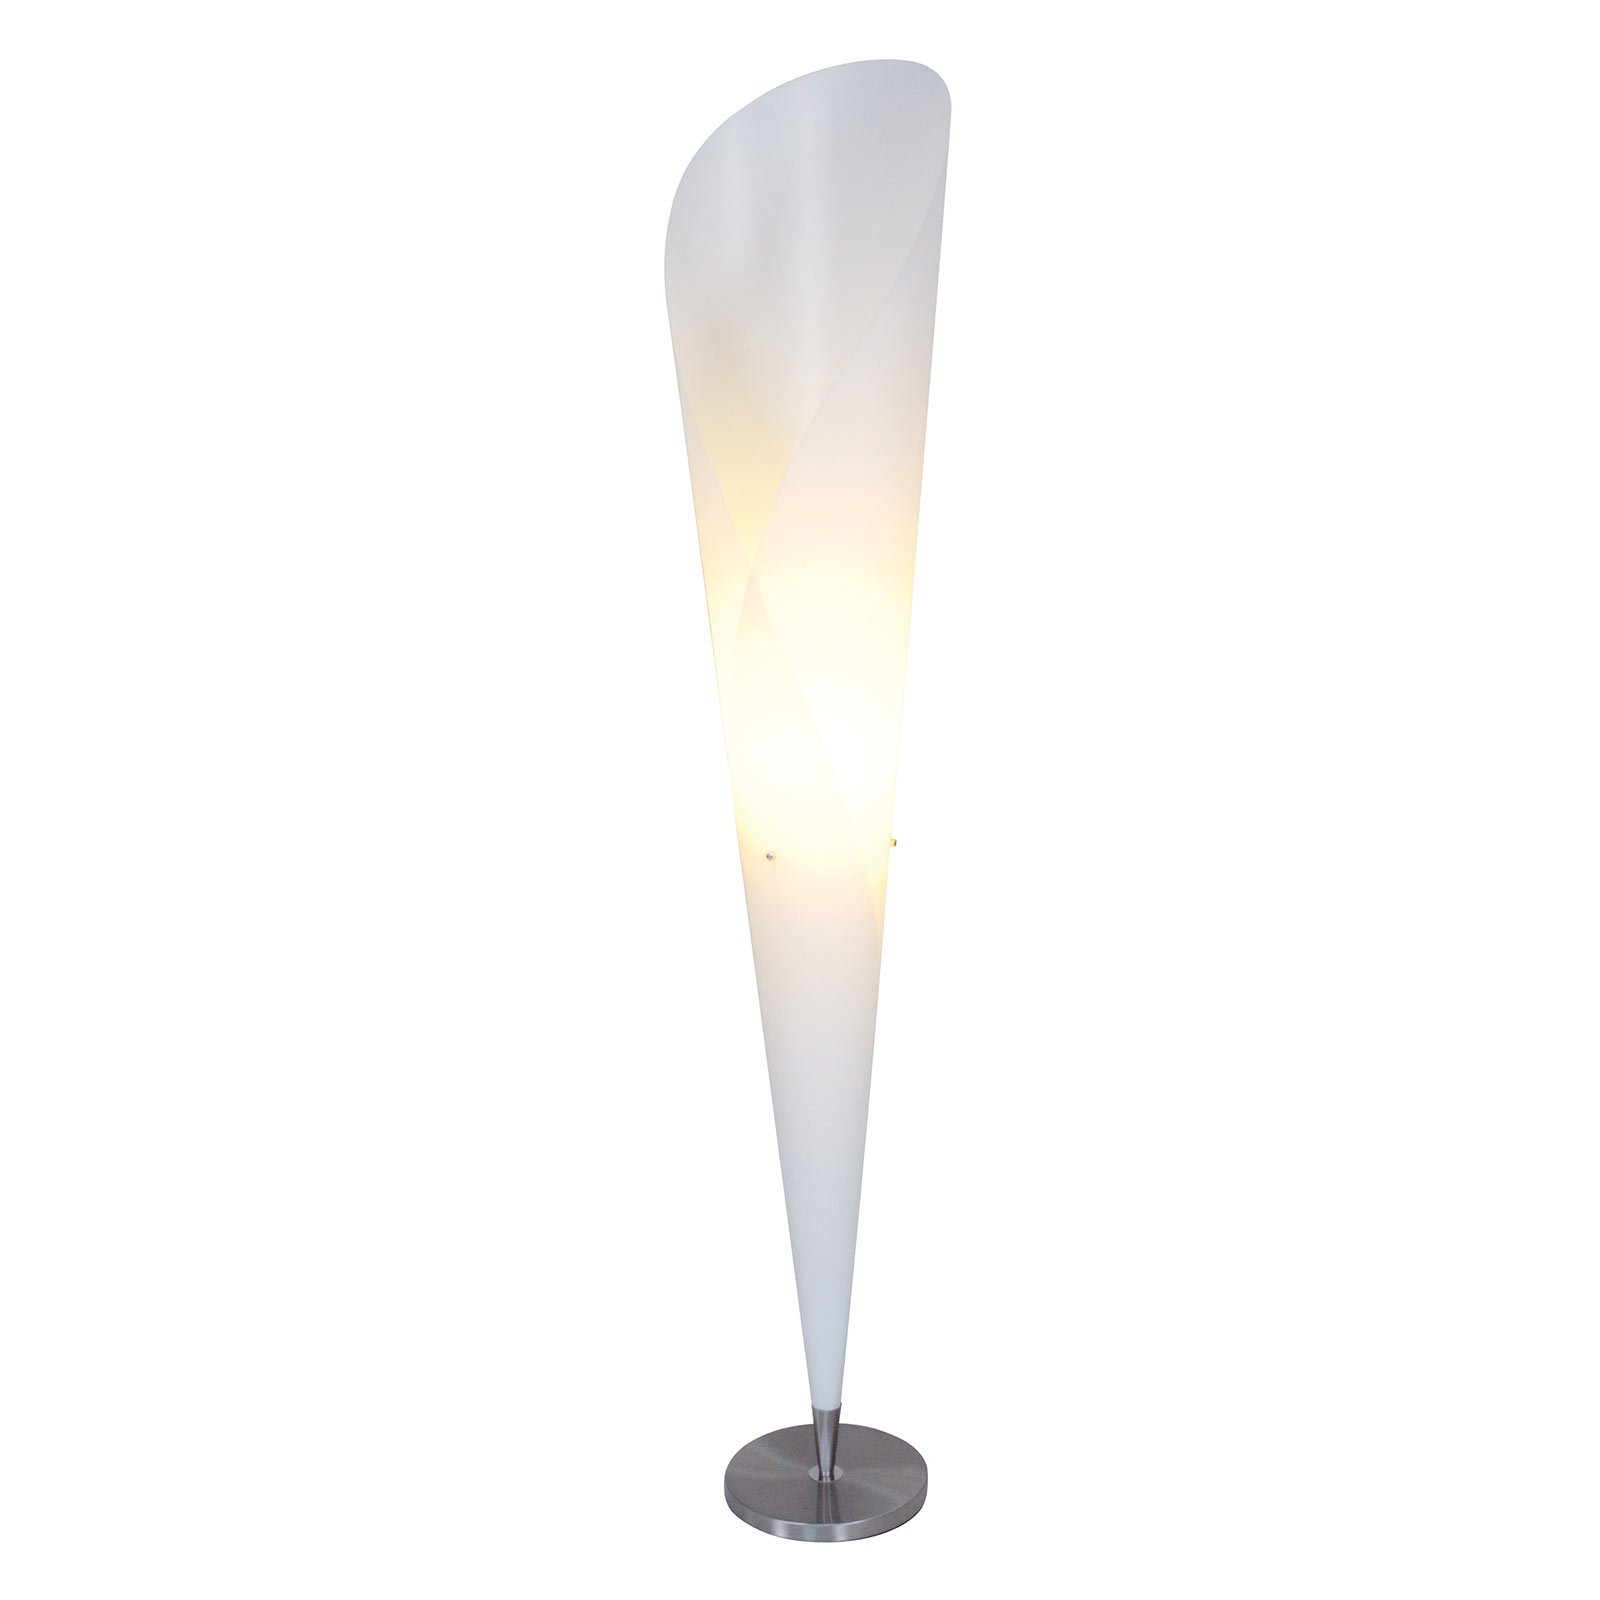 Tulip floor lamp, white